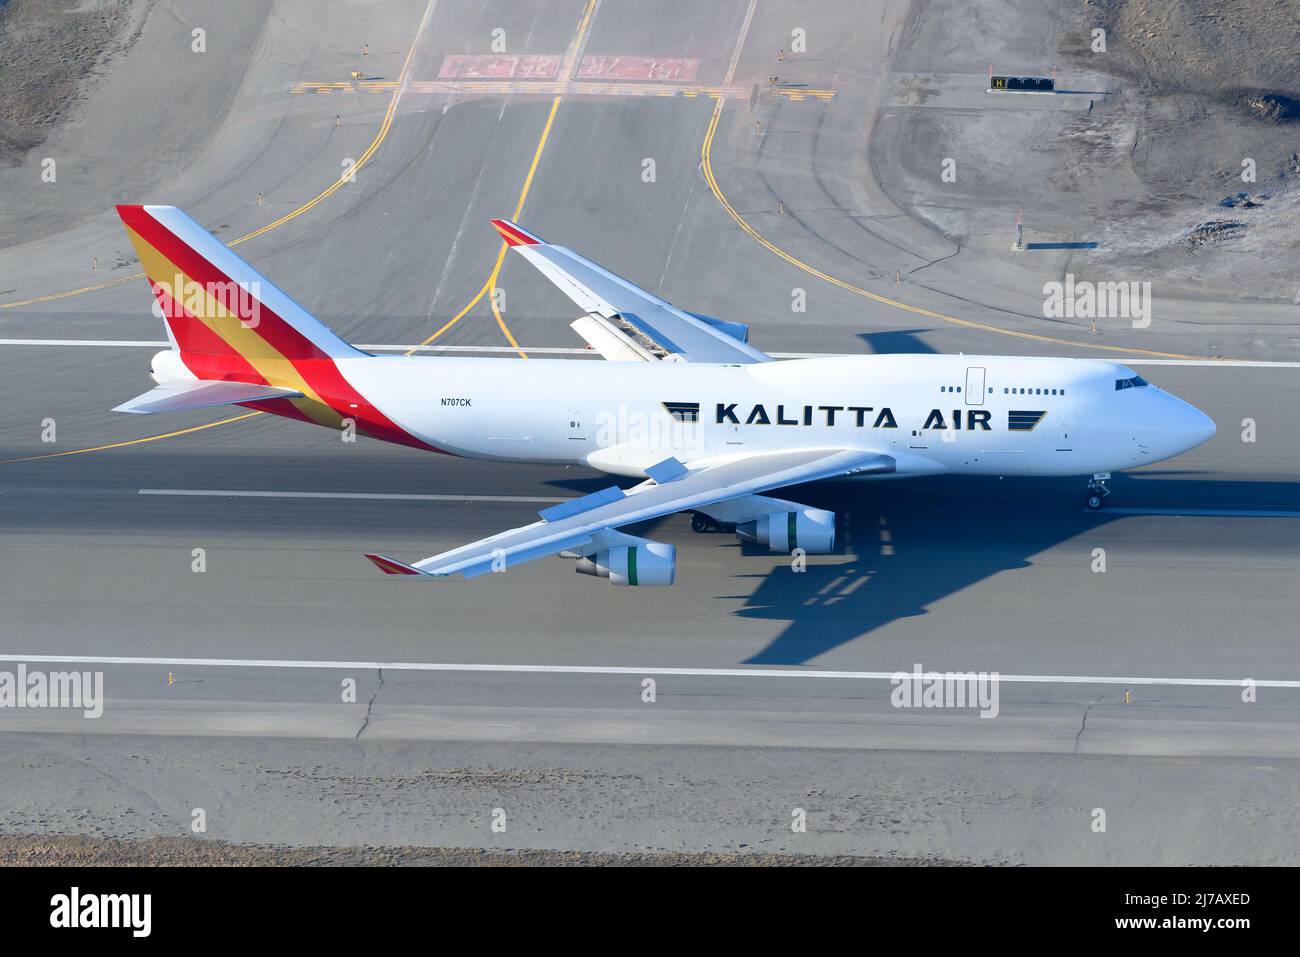 Aterrizaje de aviones de carga Kalitta Air Boeing 747. Gran avión de carga 747-400F desde arriba. Plano 747F en pista con motor de reacción de empuje inverso abierto. Foto de stock